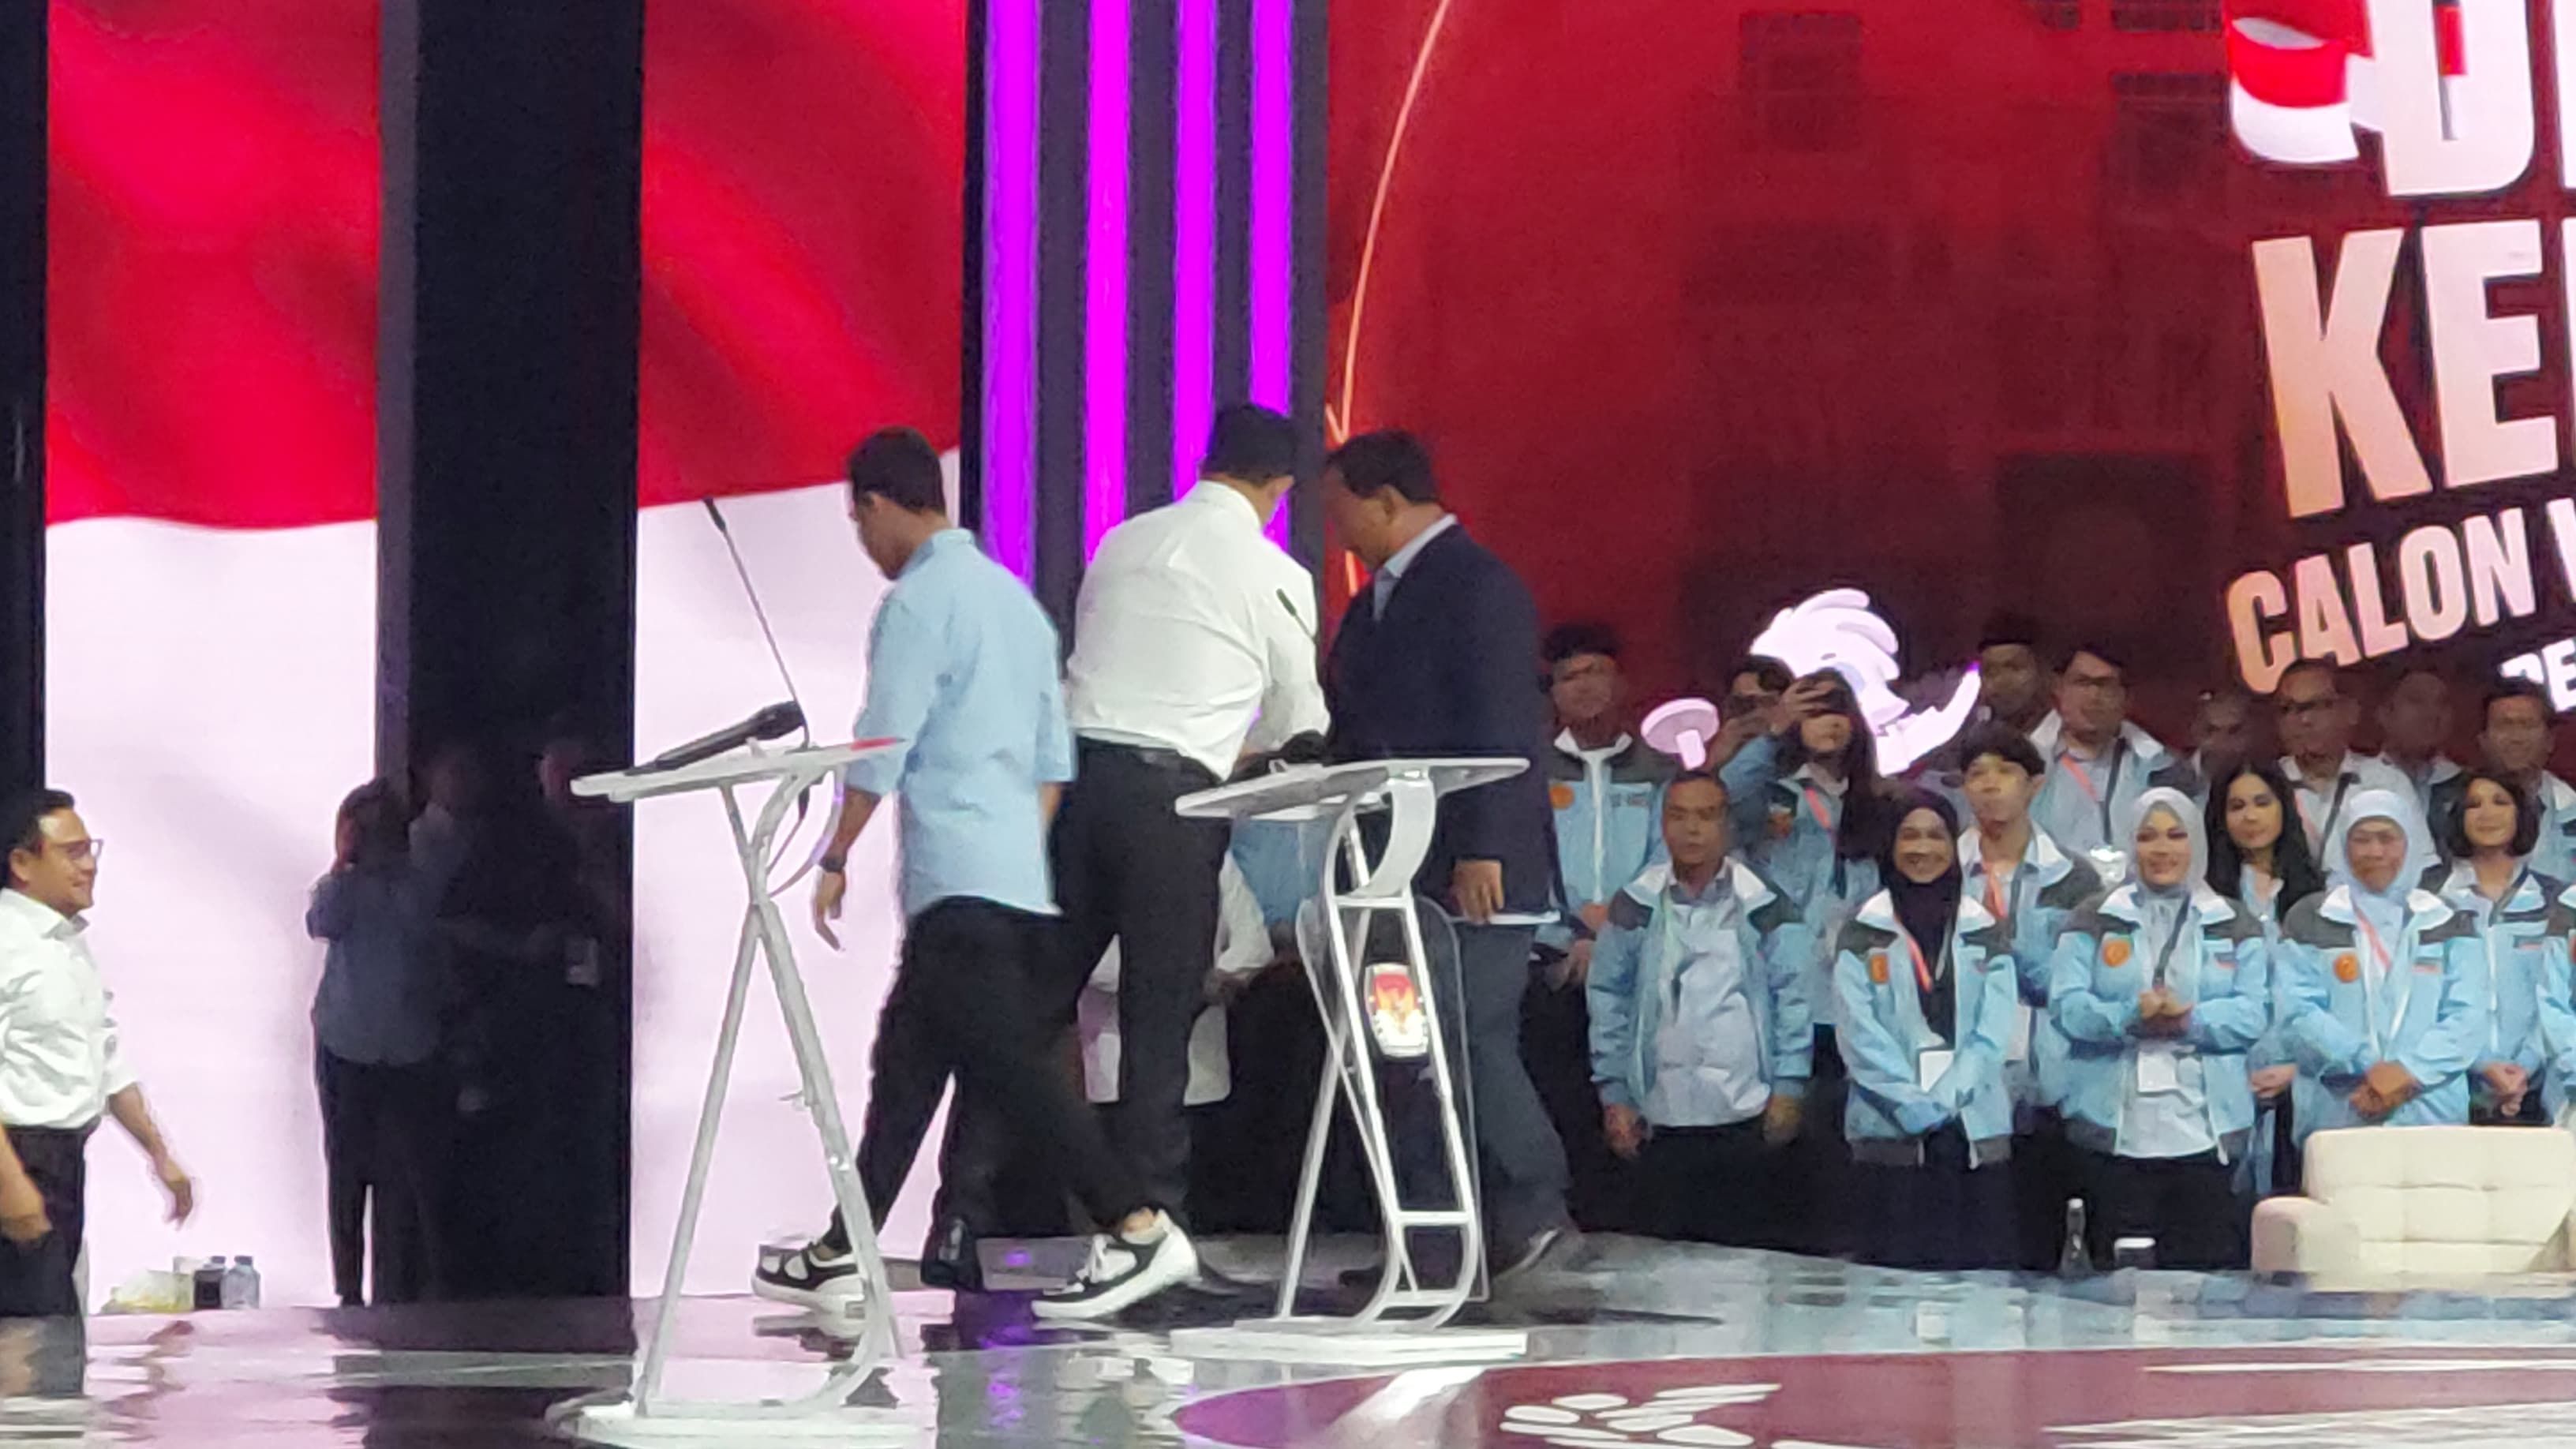 Momen Gibran Ingatkan Prabowo untuk Salami Anies Usai Masuk Arena Debat Cawapres